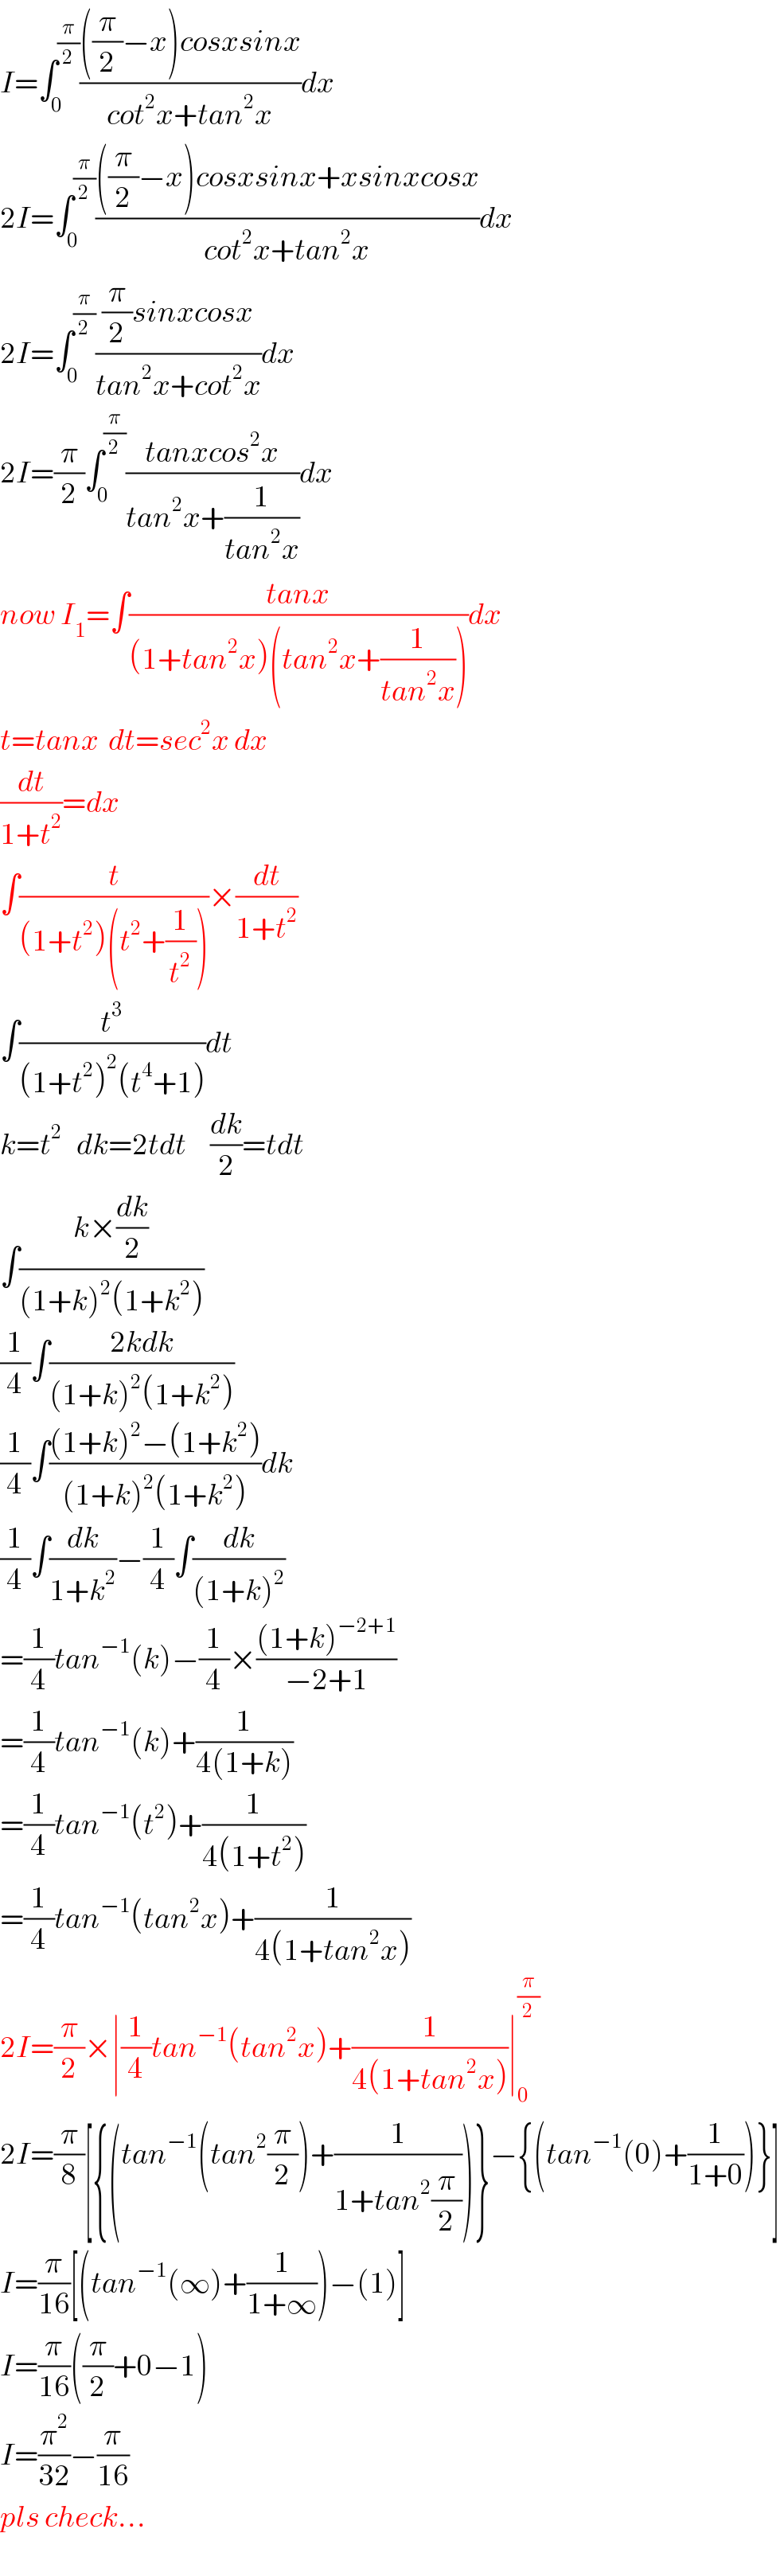 I=∫_0 ^(π/2) ((((π/2)−x)cosxsinx)/(cot^2 x+tan^2 x))dx  2I=∫_0 ^(π/2) ((((π/2)−x)cosxsinx+xsinxcosx)/(cot^2 x+tan^2 x))dx  2I=∫_0 ^(π/2) (((π/2)sinxcosx)/(tan^2 x+cot^2 x))dx  2I=(π/2)∫_0 ^(π/2) ((tanxcos^2 x)/(tan^2 x+(1/(tan^2 x))))dx  now I_1 =∫((tanx)/((1+tan^2 x)(tan^2 x+(1/(tan^2 x)))))dx  t=tanx  dt=sec^2 x dx  (dt/(1+t^2 ))=dx  ∫(t/((1+t^2 )(t^2 +(1/t^2 ))))×(dt/(1+t^2 ))  ∫(t^3 /((1+t^2 )^2 (t^4 +1)))dt  k=t^2    dk=2tdt     (dk/2)=tdt  ∫((k×(dk/2))/((1+k)^2 (1+k^2 )))  (1/4)∫((2kdk)/((1+k)^2 (1+k^2 )))  (1/4)∫(((1+k)^2 −(1+k^2 ))/((1+k)^2 (1+k^2 )))dk  (1/4)∫(dk/(1+k^2 ))−(1/4)∫(dk/((1+k)^2 ))  =(1/4)tan^(−1) (k)−(1/4)×(((1+k)^(−2+1) )/(−2+1))  =(1/4)tan^(−1) (k)+(1/(4(1+k)))  =(1/4)tan^(−1) (t^2 )+(1/(4(1+t^2 )))  =(1/4)tan^(−1) (tan^2 x)+(1/(4(1+tan^2 x)))  2I=(π/2)×∣(1/4)tan^(−1) (tan^2 x)+(1/(4(1+tan^2 x)))∣_0 ^(π/2)   2I=(π/8)[{(tan^(−1) (tan^2 (π/2))+(1/(1+tan^2 (π/2))))}−{(tan^(−1) (0)+(1/(1+0)))}]  I=(π/(16))[(tan^(−1) (∞)+(1/(1+∞)))−(1)]  I=(π/(16))((π/2)+0−1)  I=(π^2 /(32))−(π/(16))  pls check...  